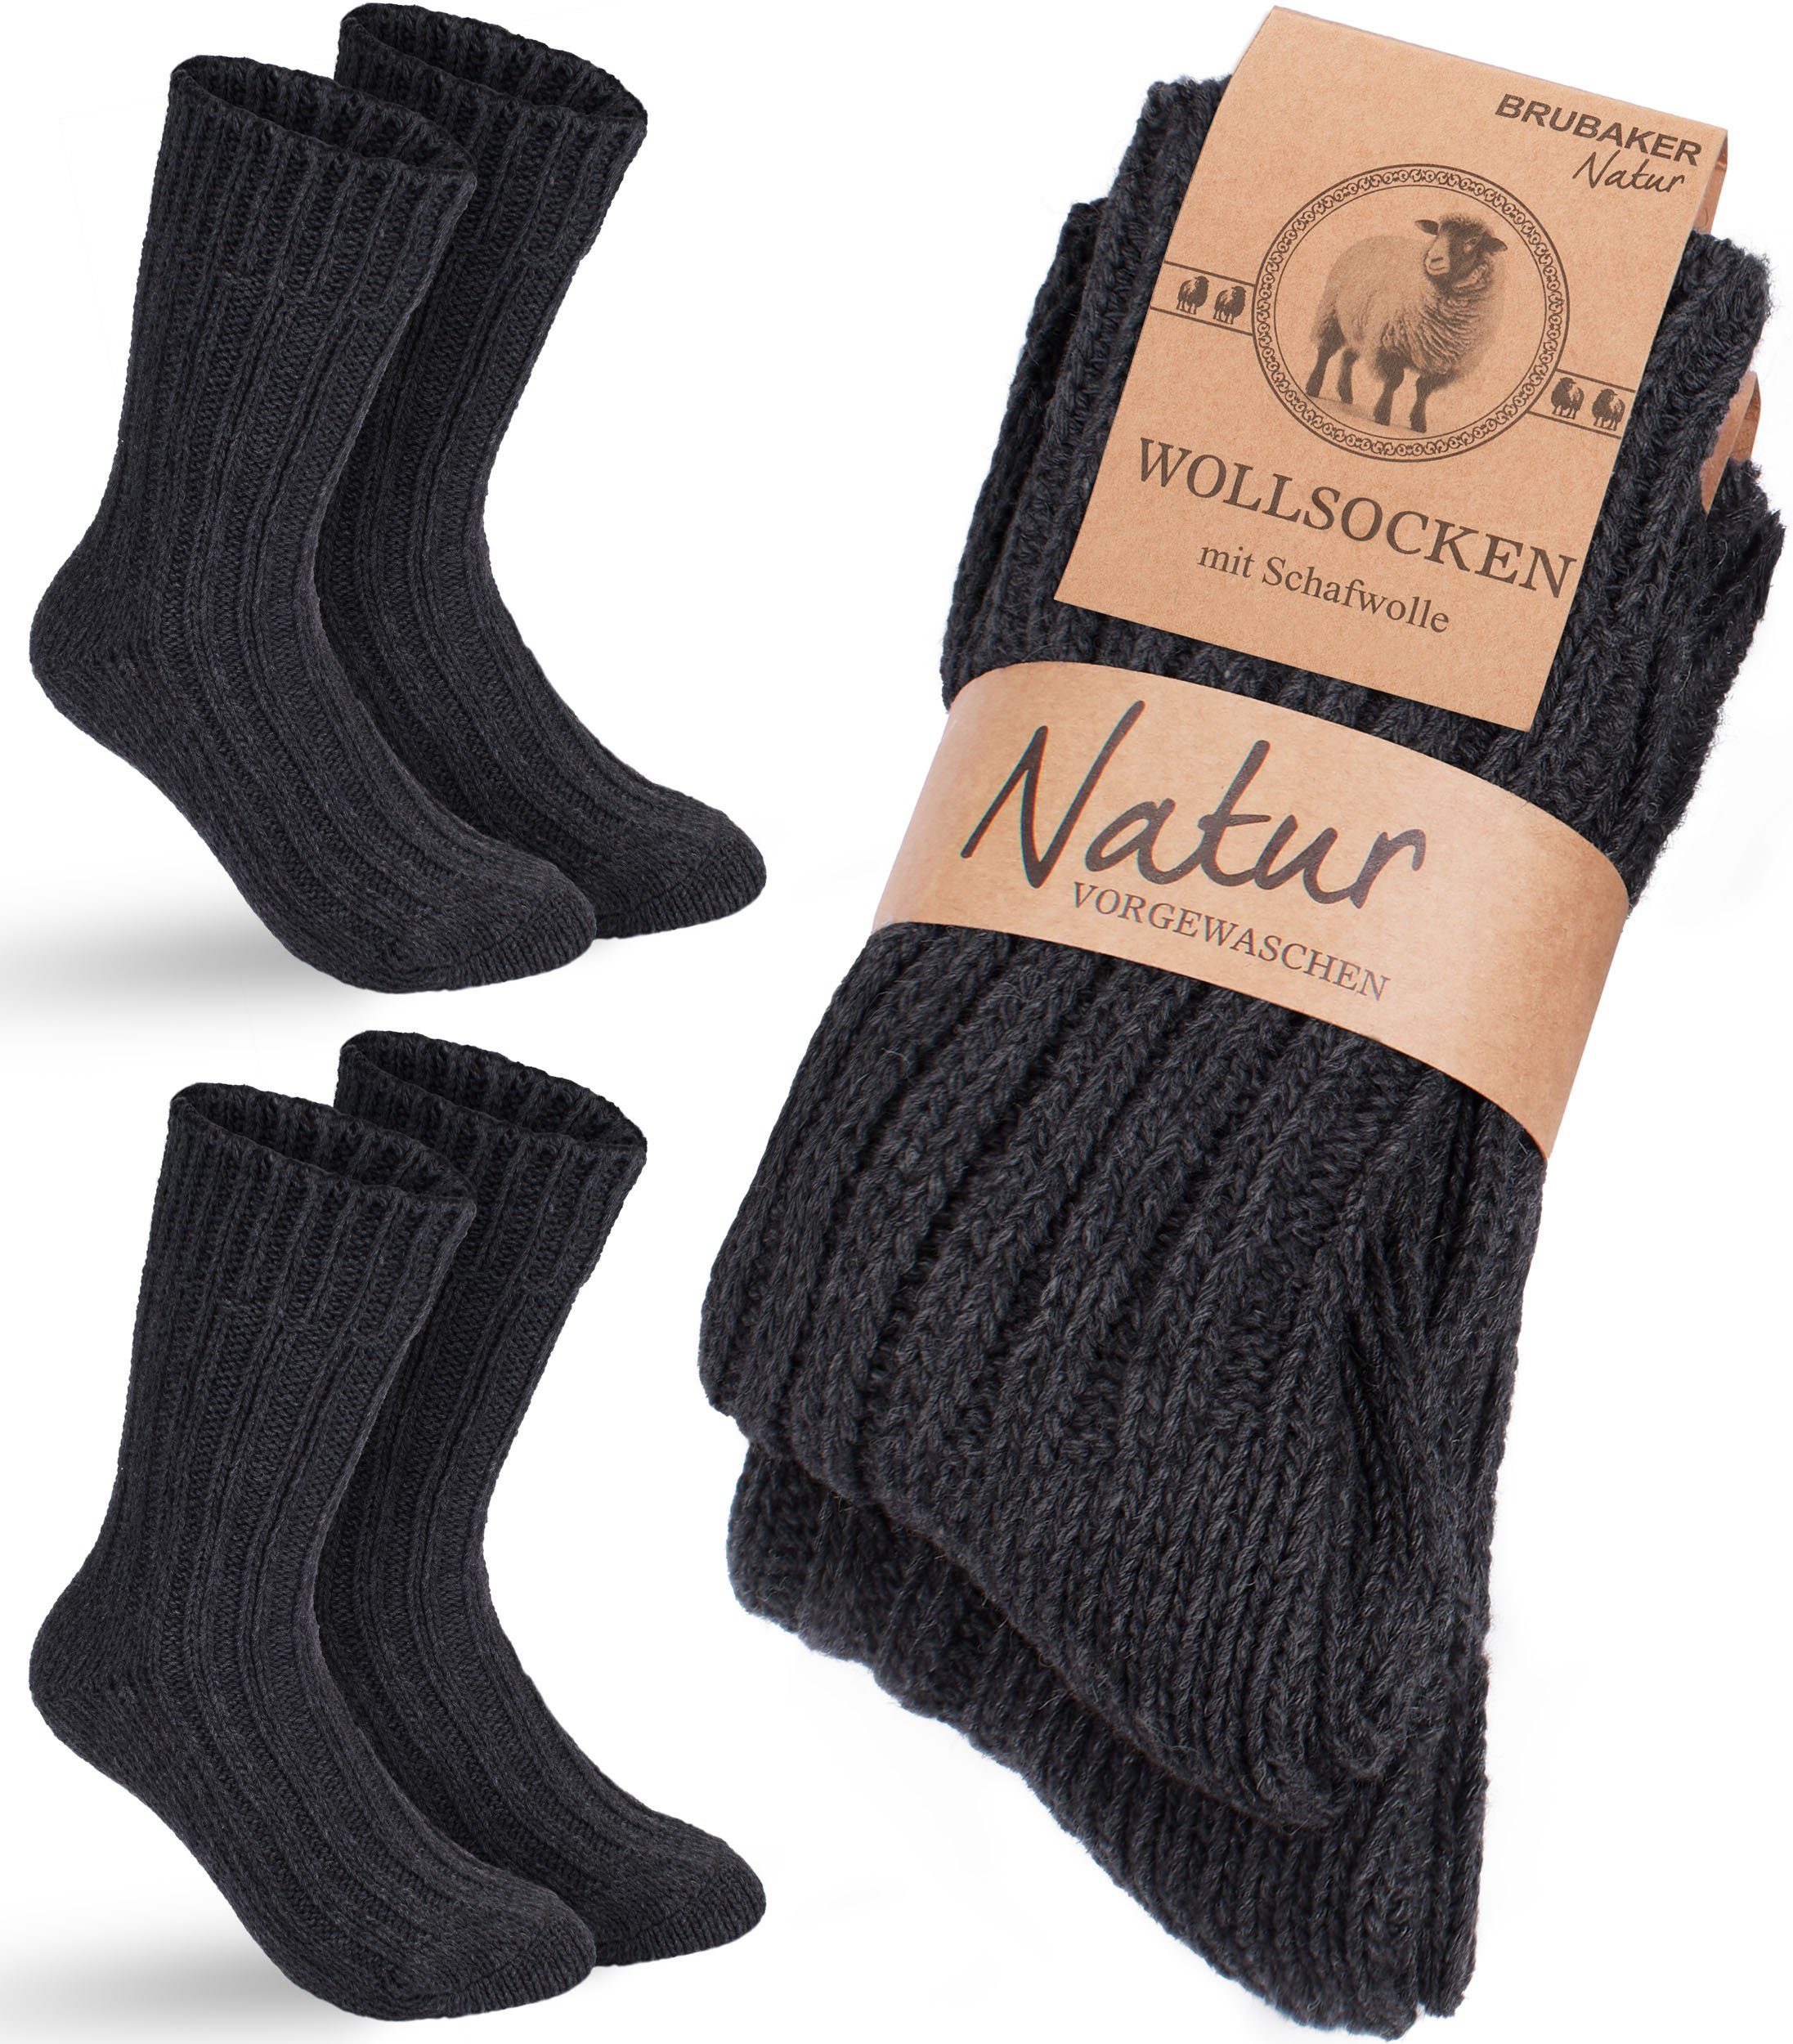 BRUBAKER Socken Wollsocken - Wintersocken für Damen und Herren - Warm und Flauschig (2-Paar) Stricksocken Set mit Schafwolle - Winter Thermosocken Anthrazit